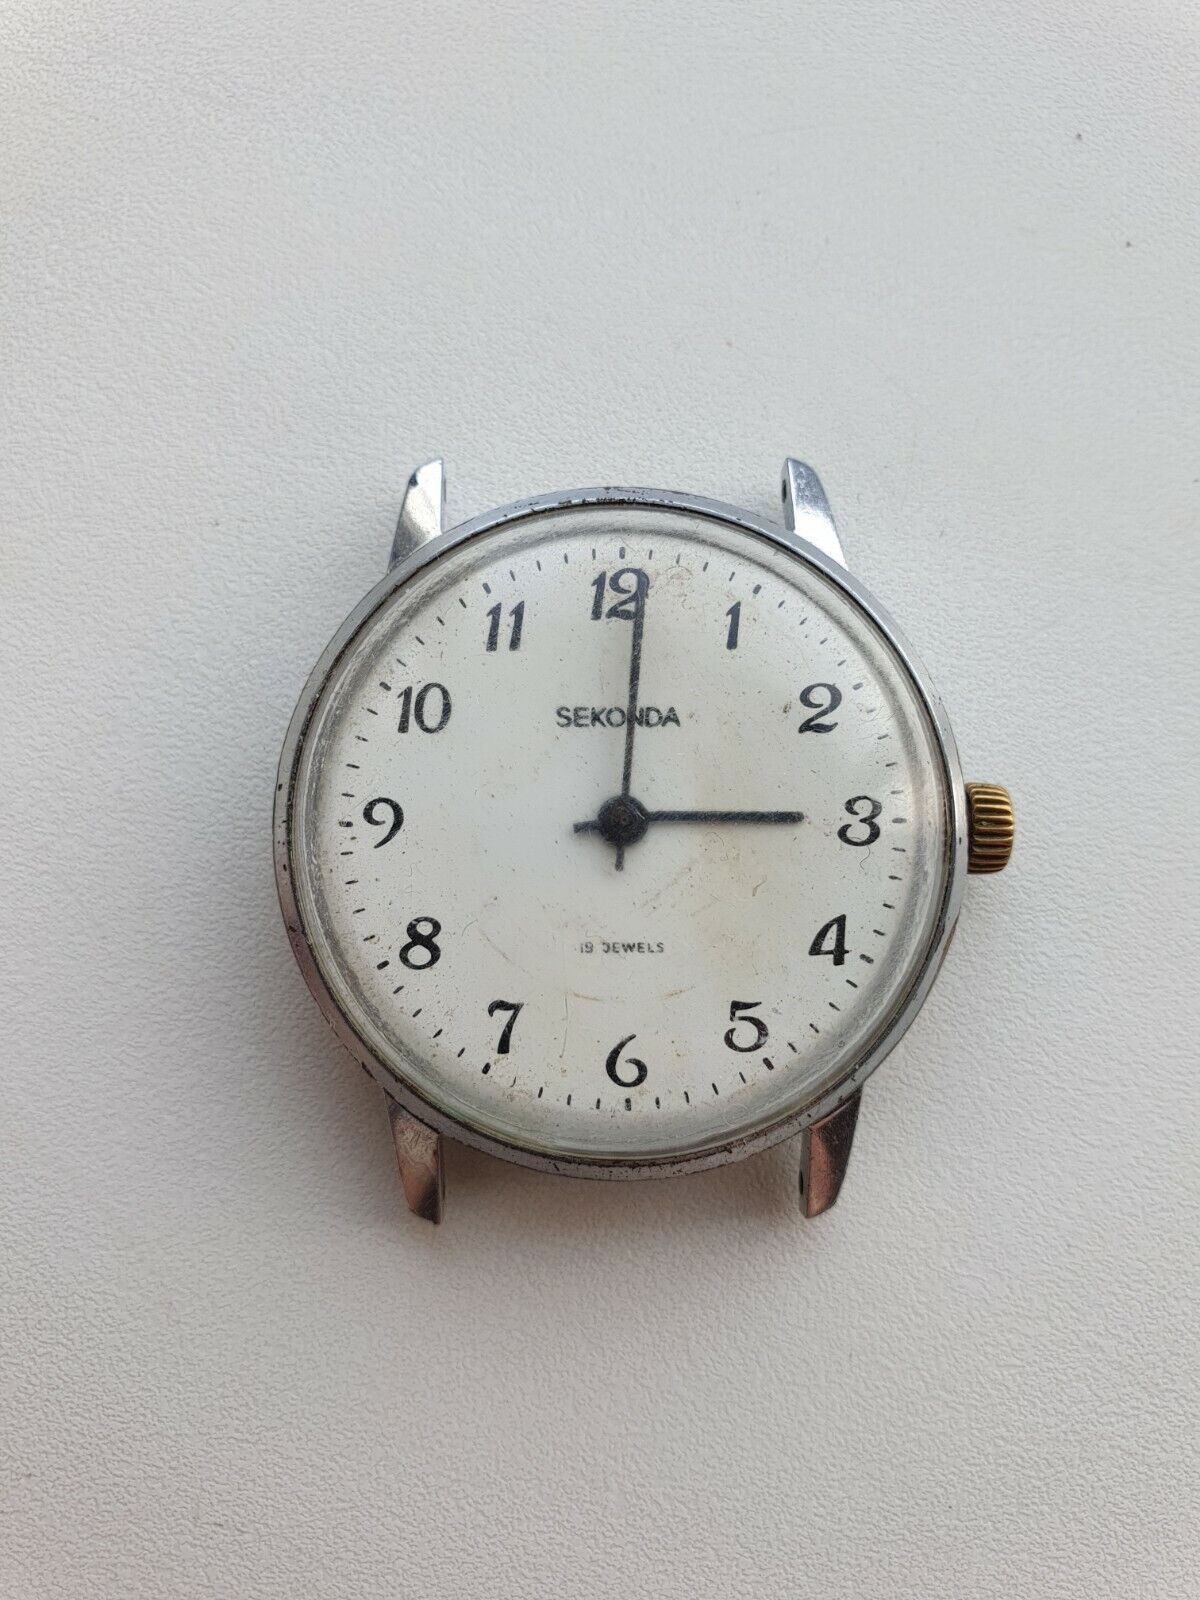 SEKONDA 19 jewels USSR 1970's Man's Wrist Watch